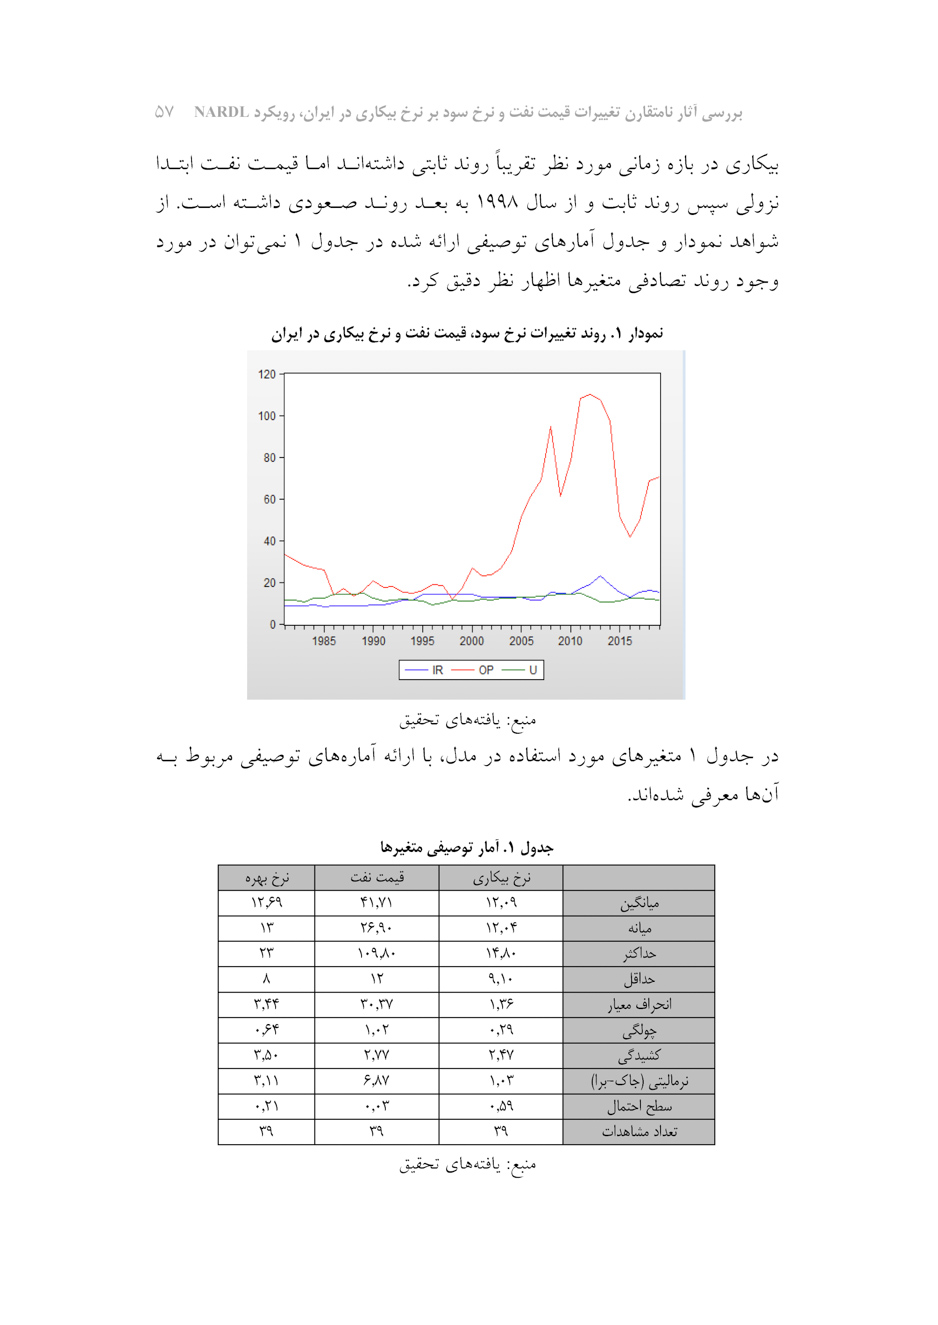 بررسی آثار نامتقارن تغییرات قیمت نفت و نرخ سود بر نرخ بیکاری در ایران، رویکرد NARDL